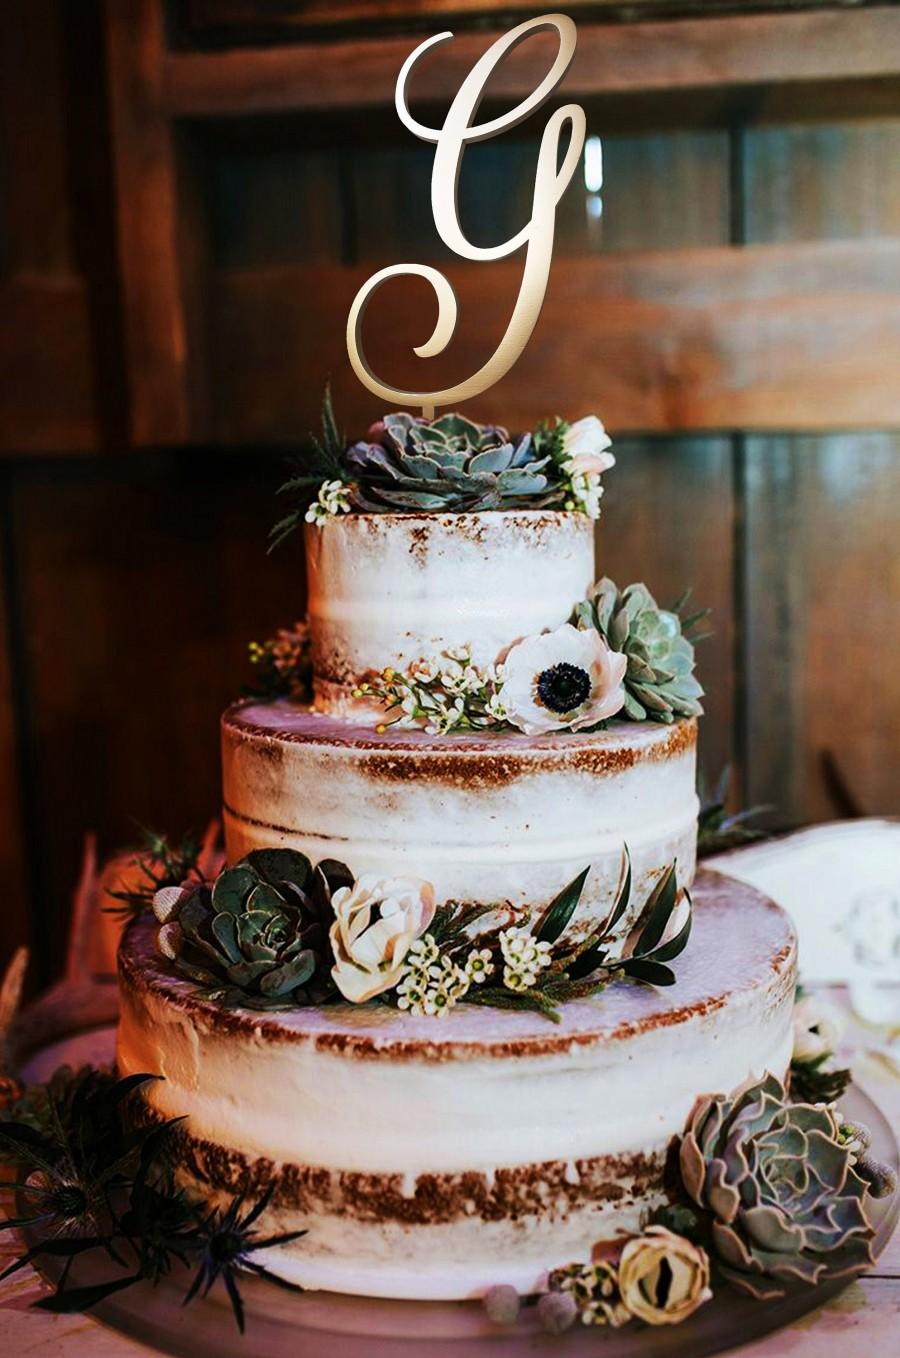 زفاف - Letter G Cake Topper Wedding Cake Topper Initials cake topper Cake toppers single letters natural wood monogram cake topper wedding letter g